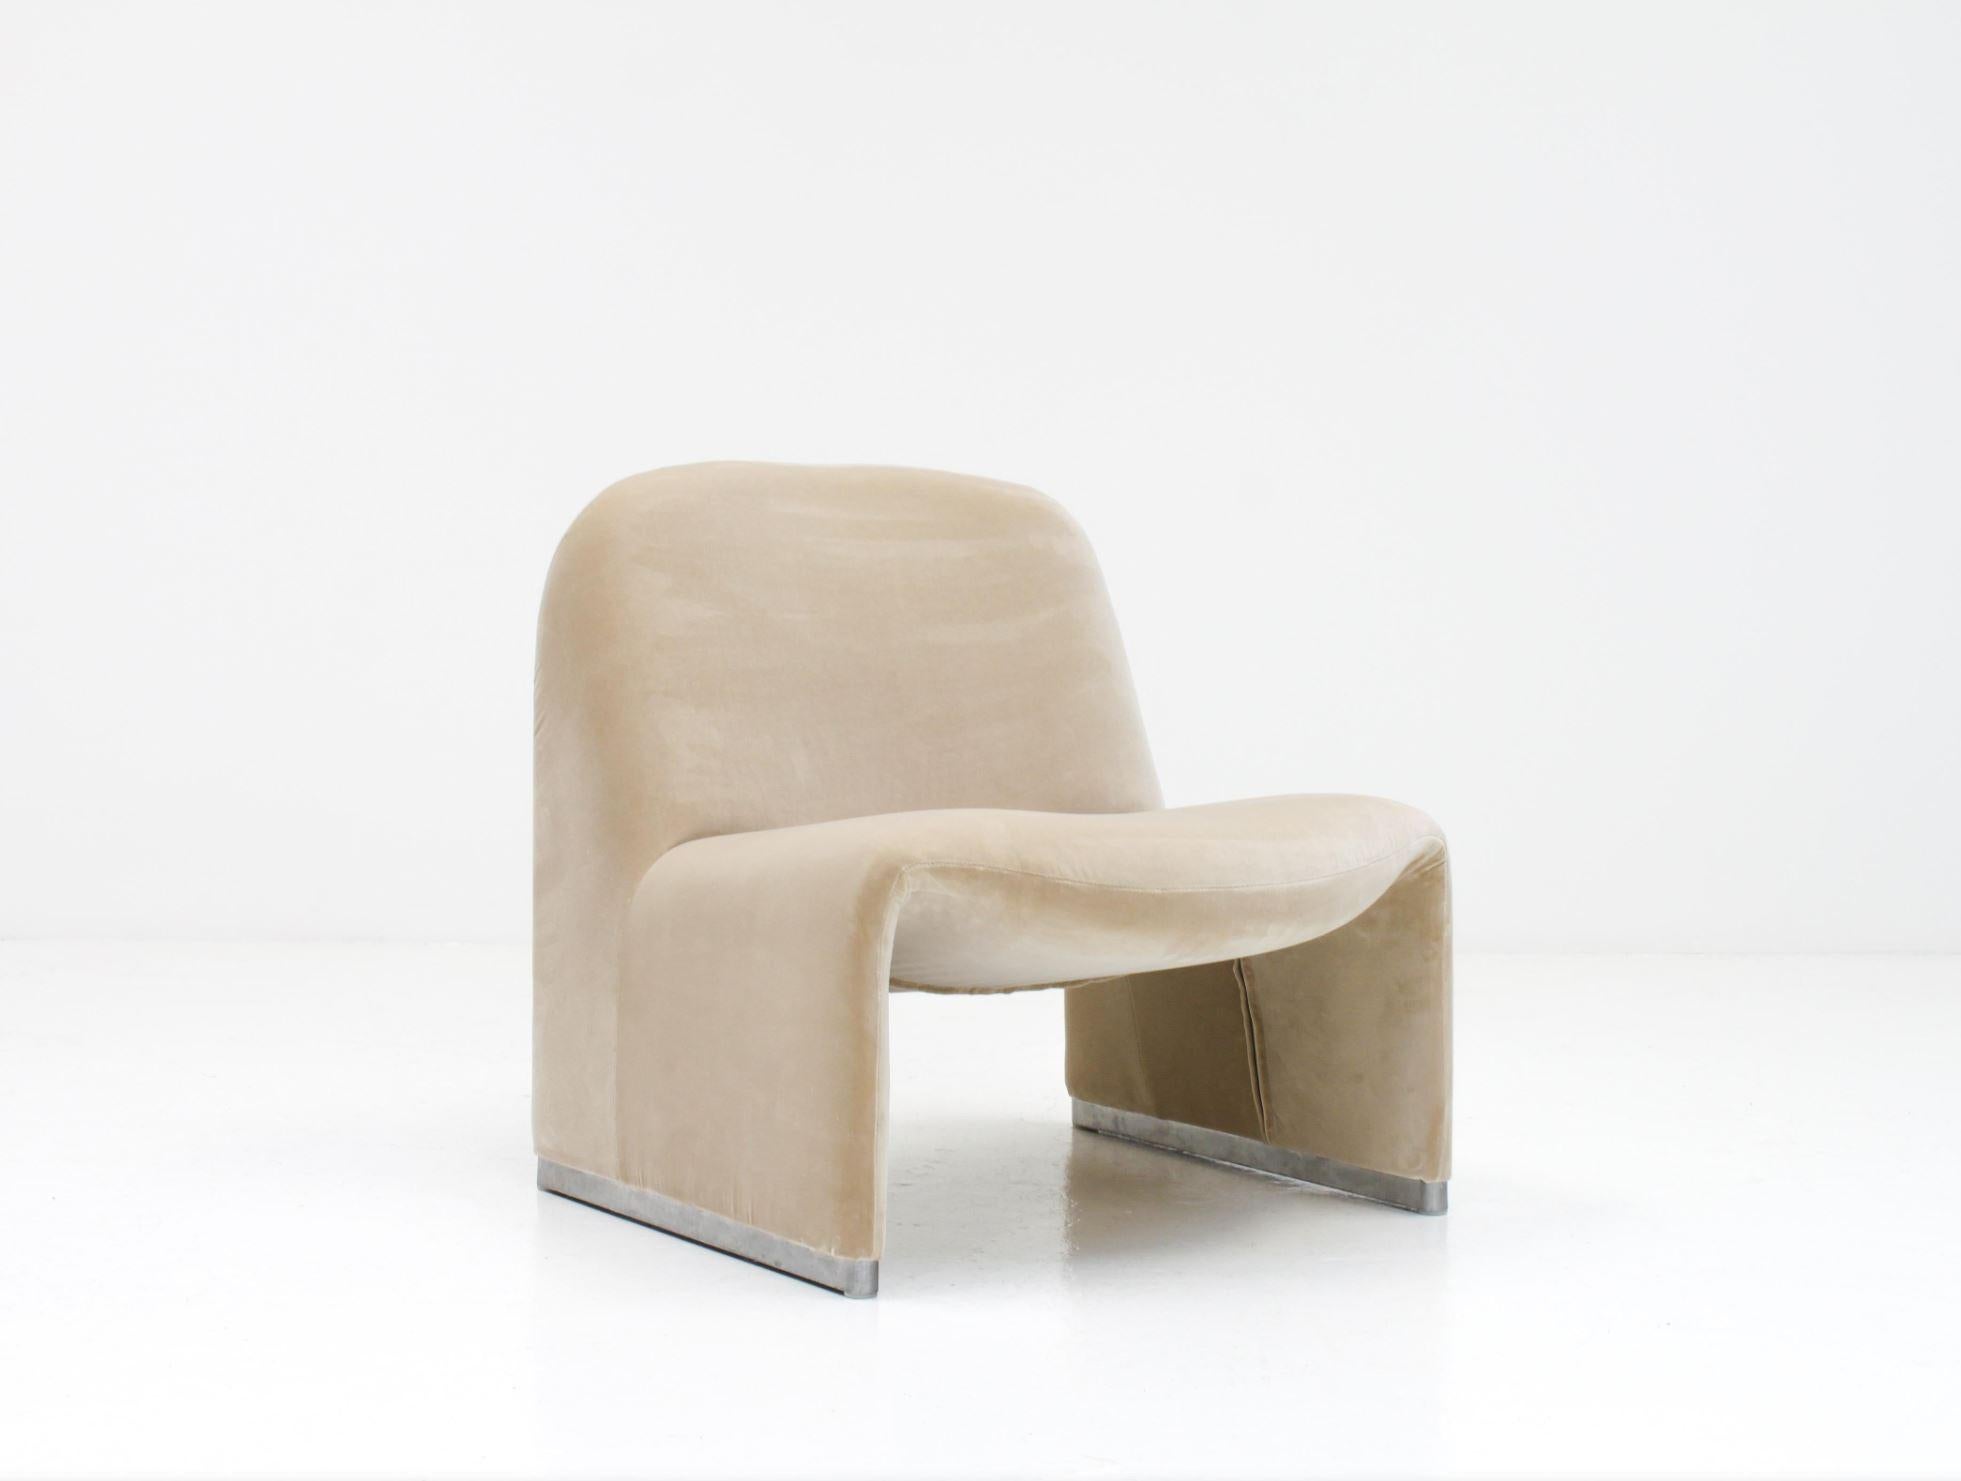 AB CUSTOM - Giancarlo Piretti “Alky” Chair in New Velvet, Artifort, 1970s 1